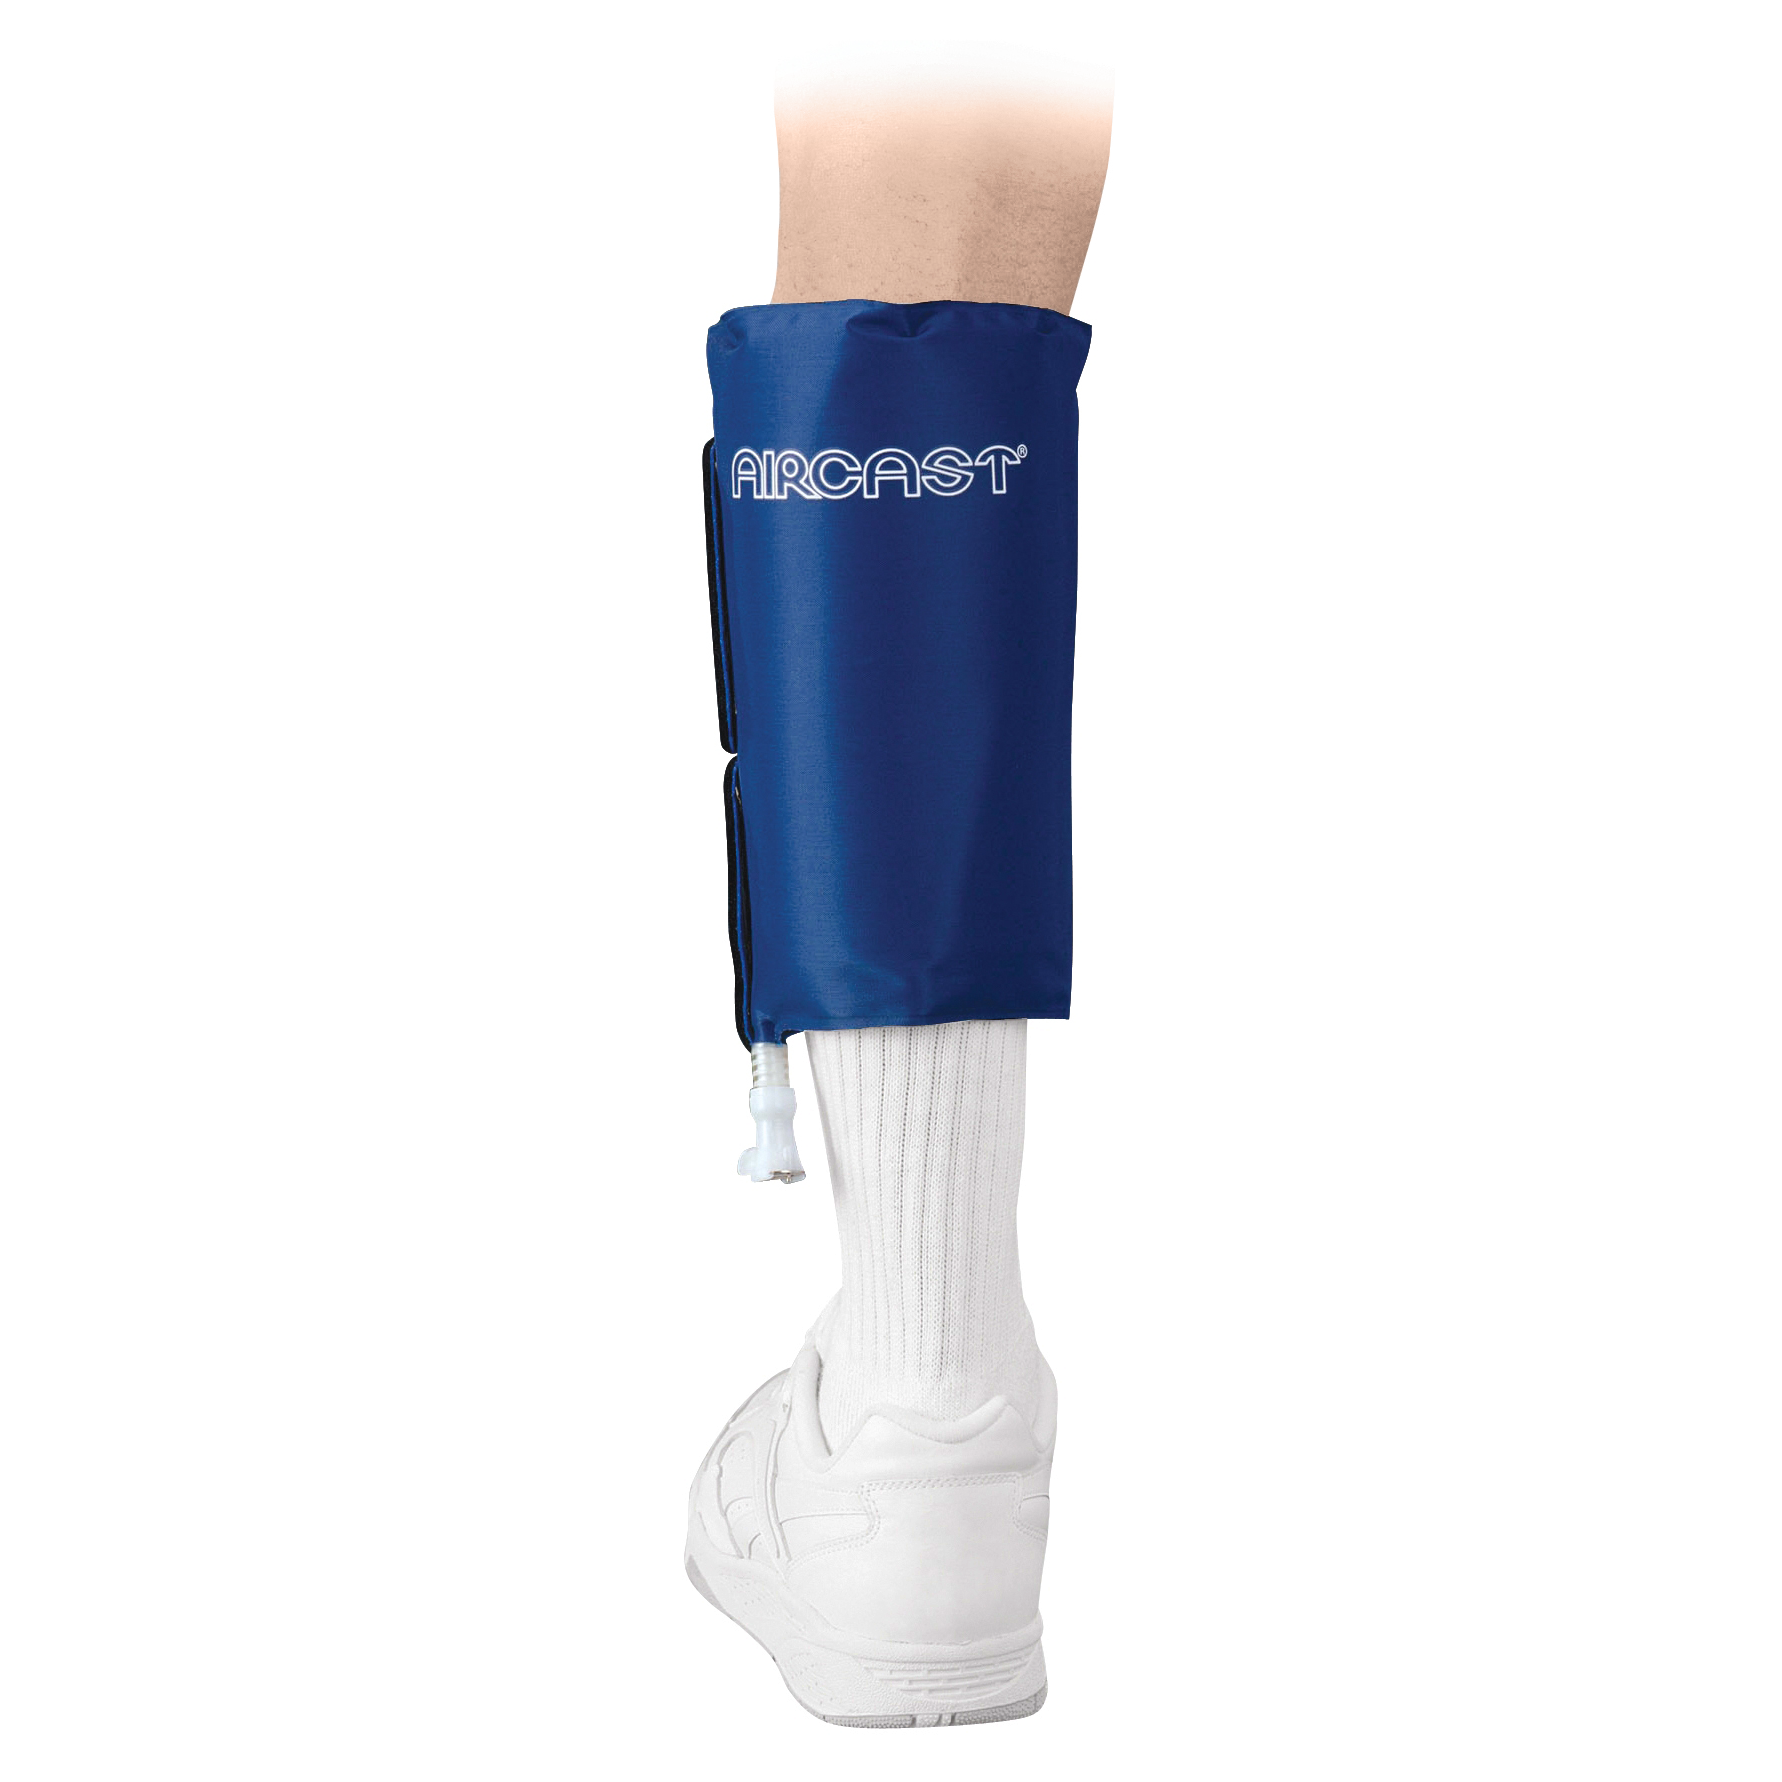 Produktbild AIRCAST® Cryo/Cuff™-Unterschenkelbandage, Kälte Therapie-System zur Reduktion von Schwellungen und Schmerzen